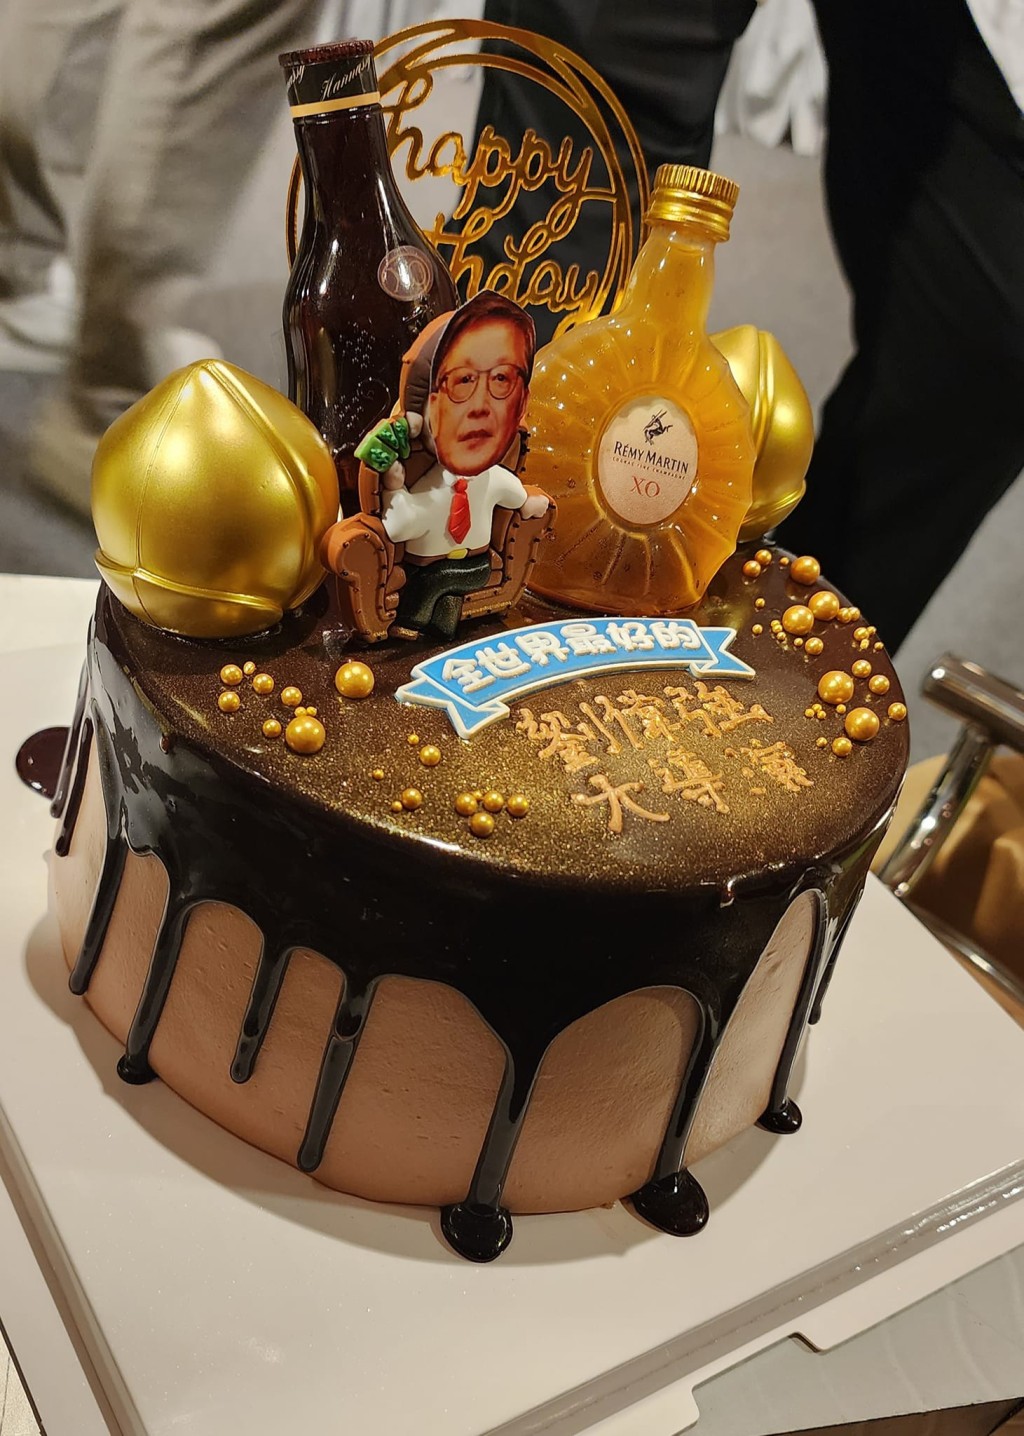 劉偉強獲贈「XO酒伴金桃」造型蛋糕。